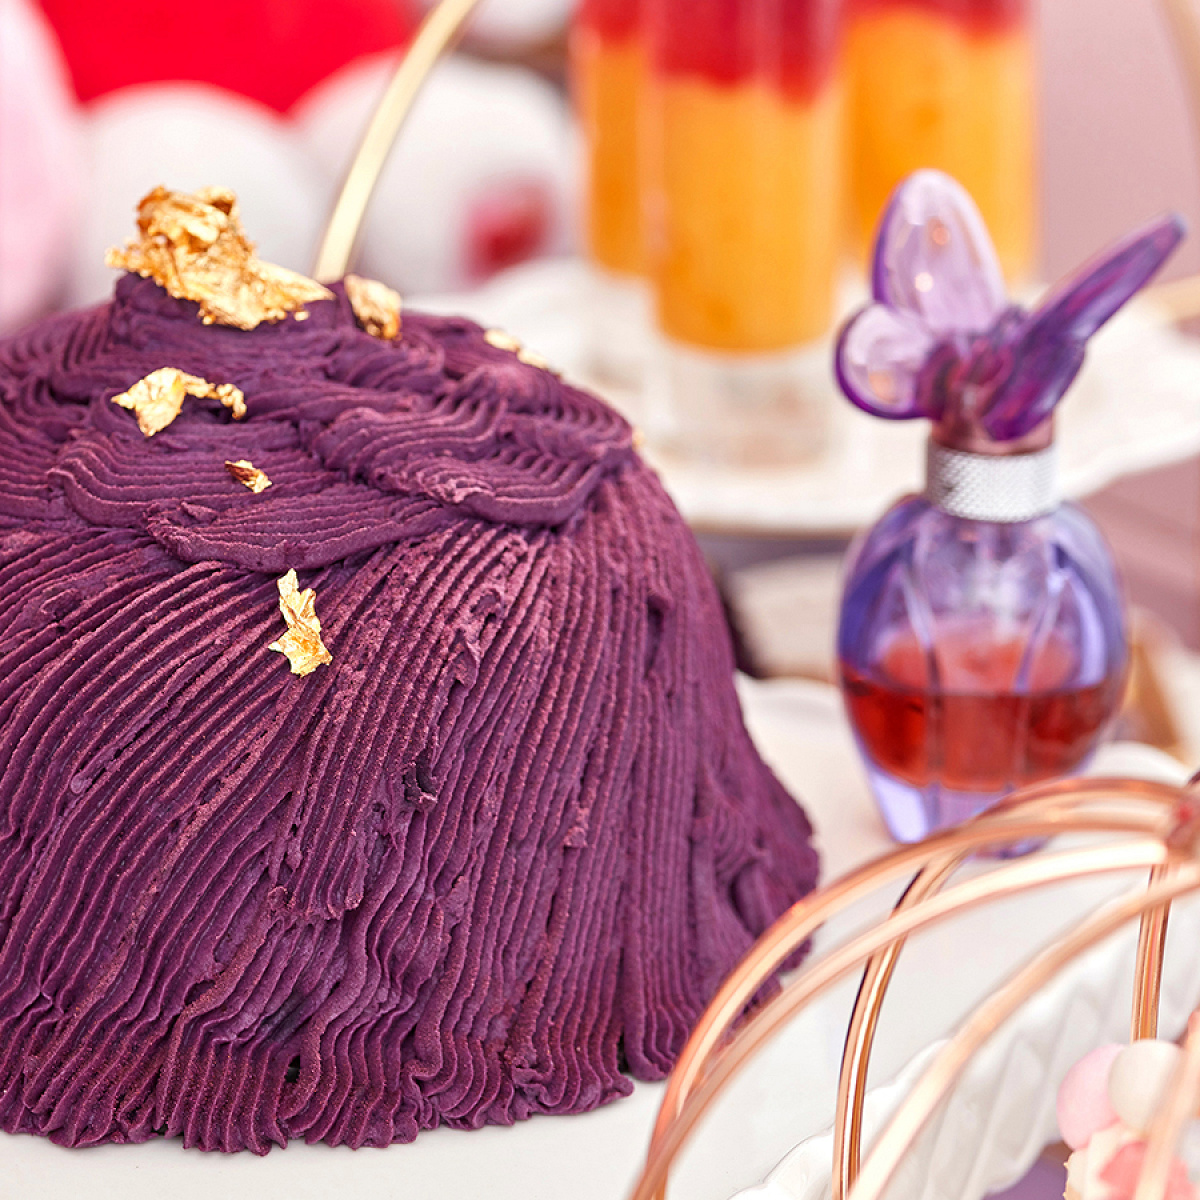 クロミのお気に入りの紫芋のモンブラン